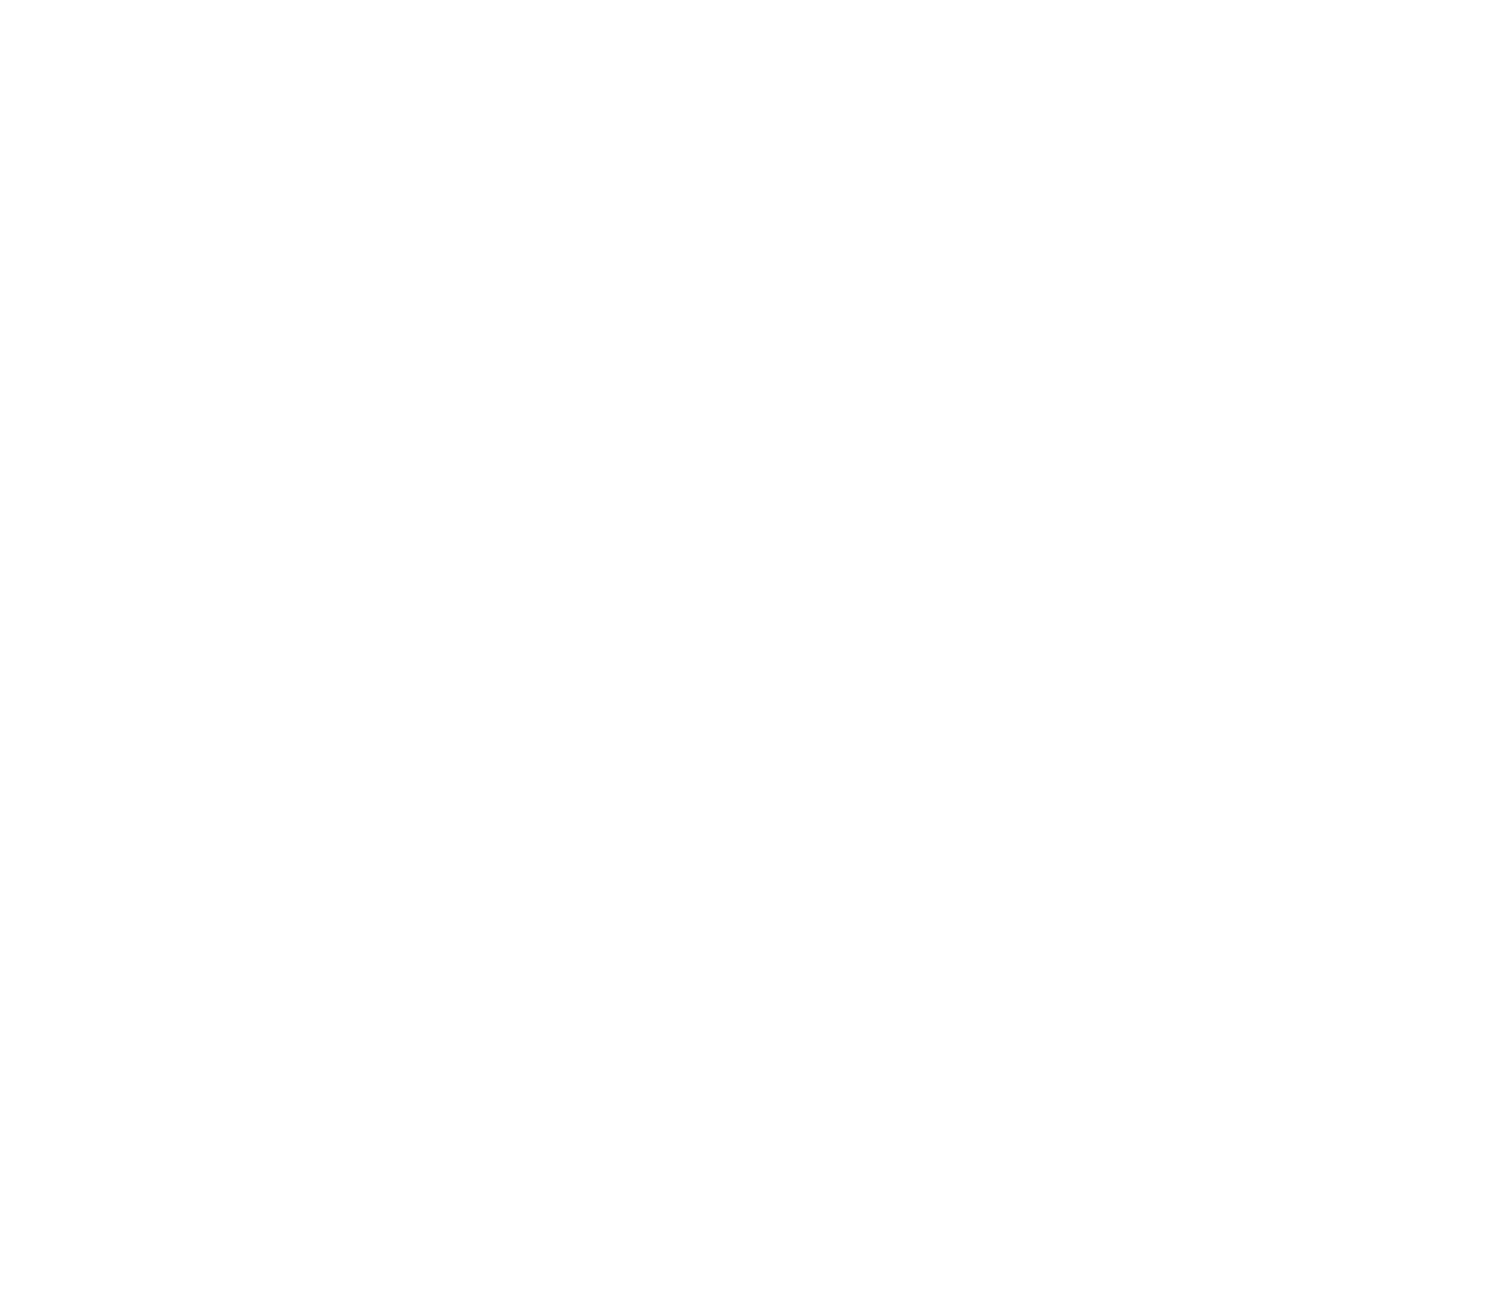 ITC logo pour fonds sombres (PNG transparent)